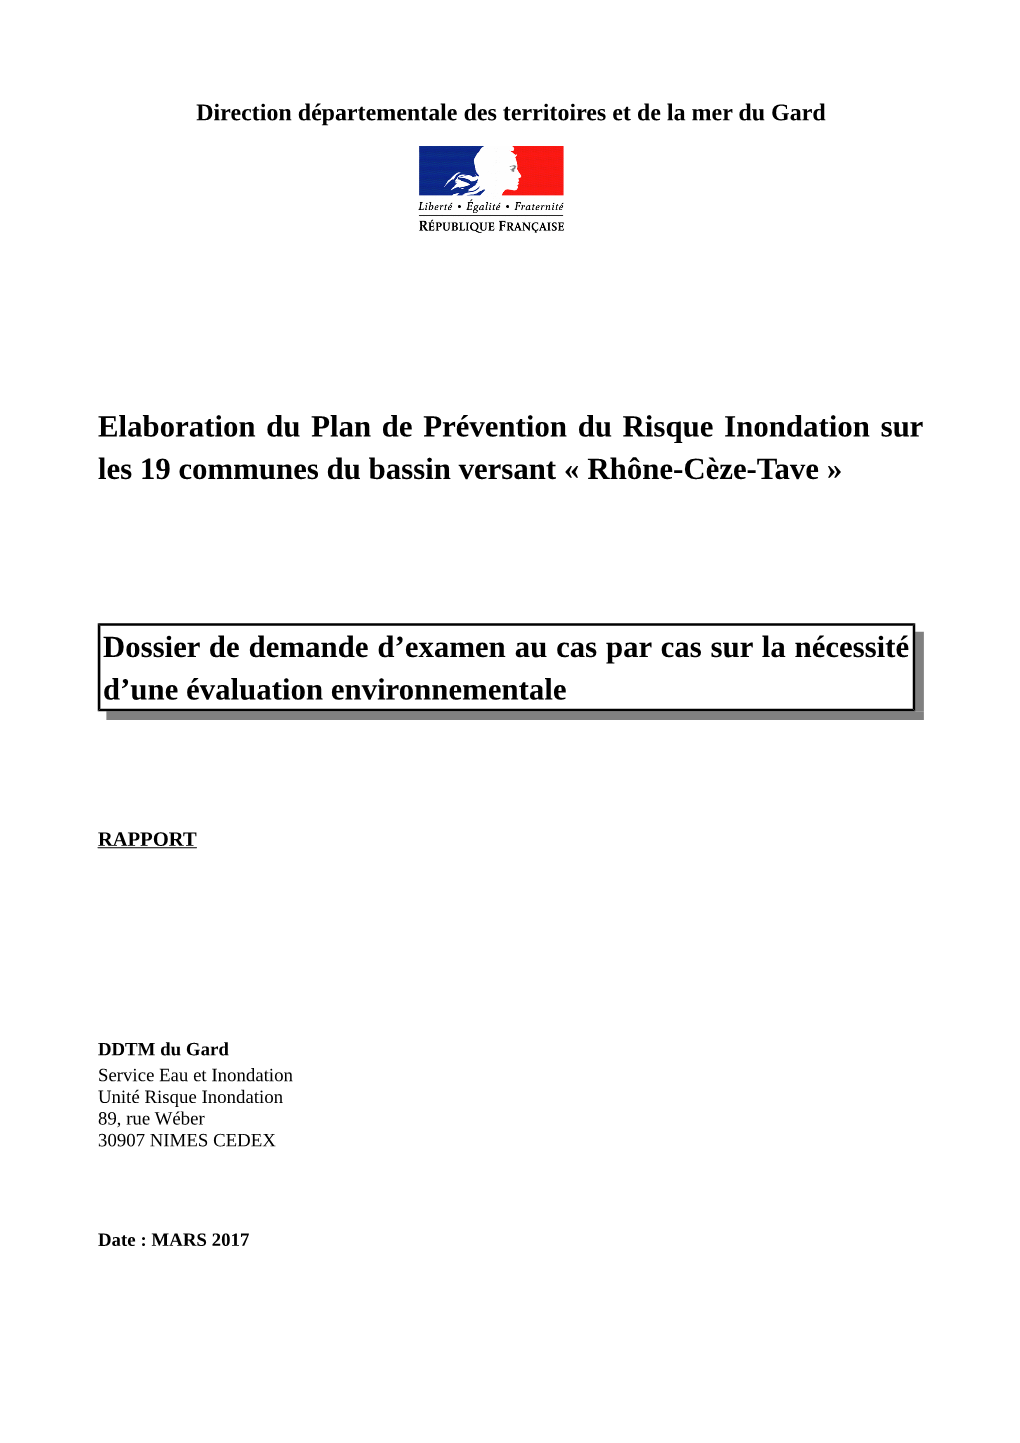 Elaboration Du Plan De Prévention Du Risque Inondation Sur Les 19 Communes Du Bassin Versant « Rhône-Cèze-Tave » Dossier De